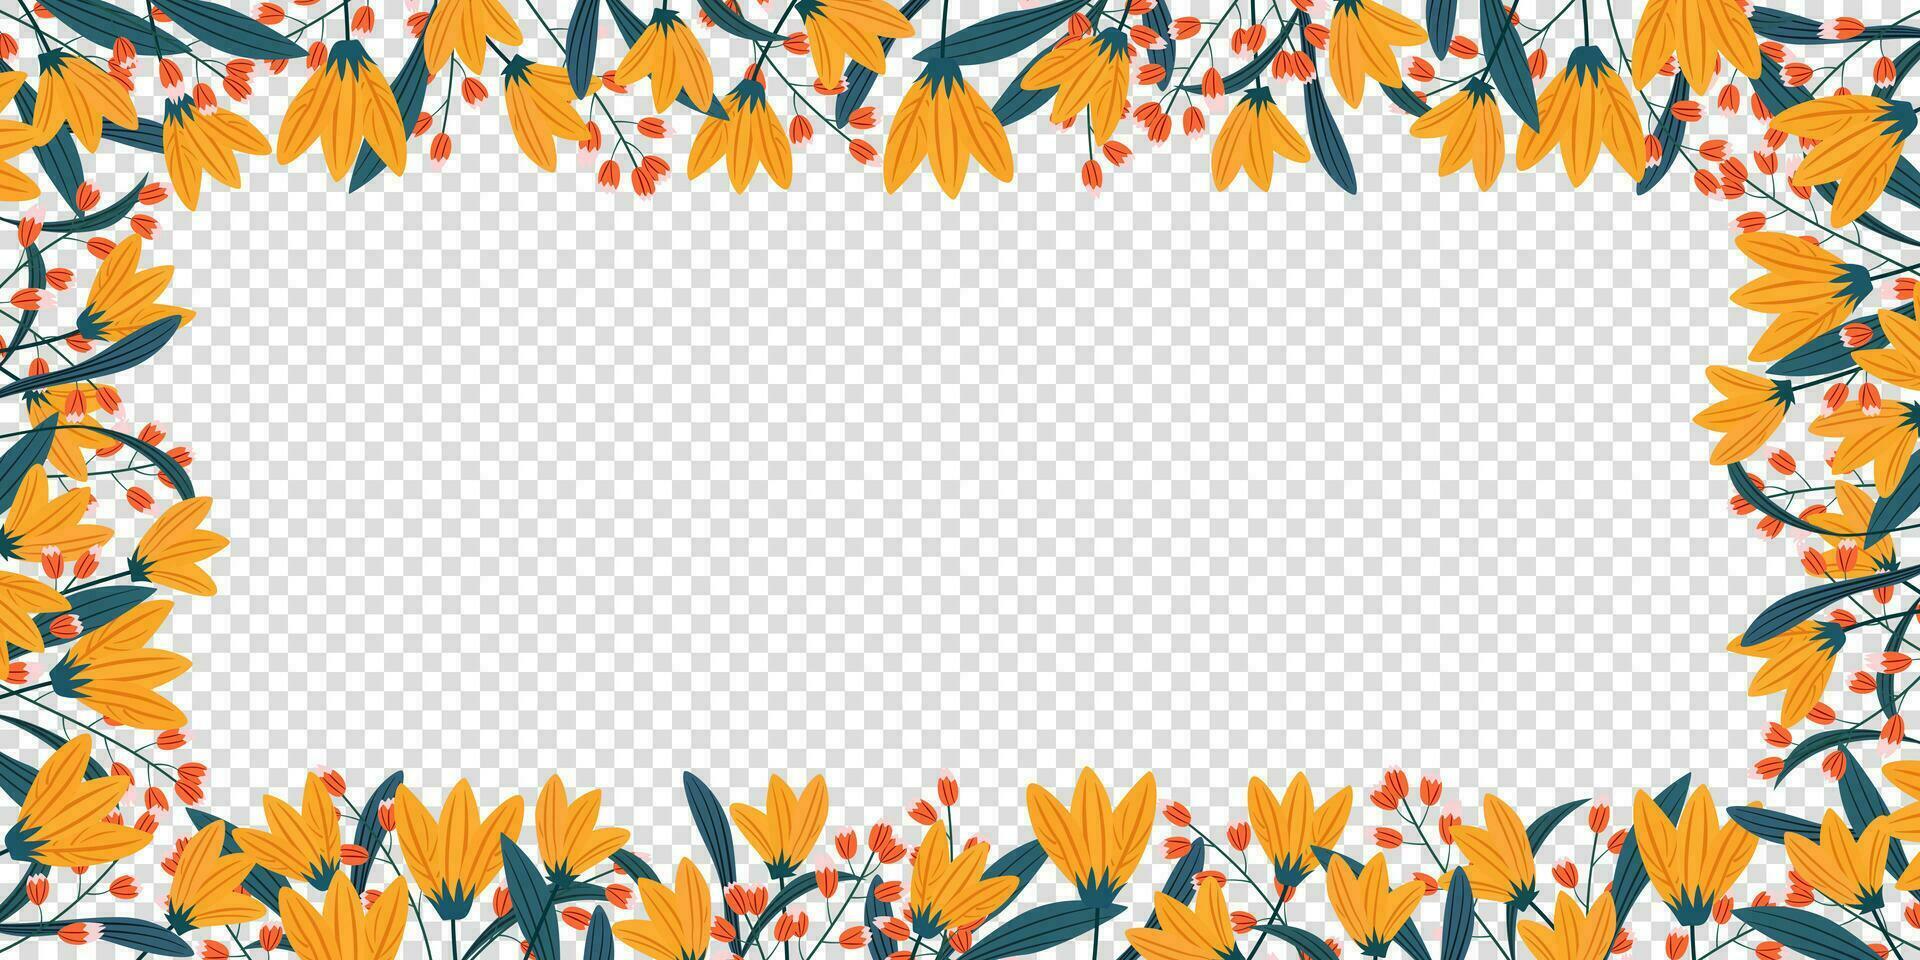 ram av blad och gul, orange blomma för firande kort baner mall bakgrund. abstrakt och blommig design i klotter stil vektor